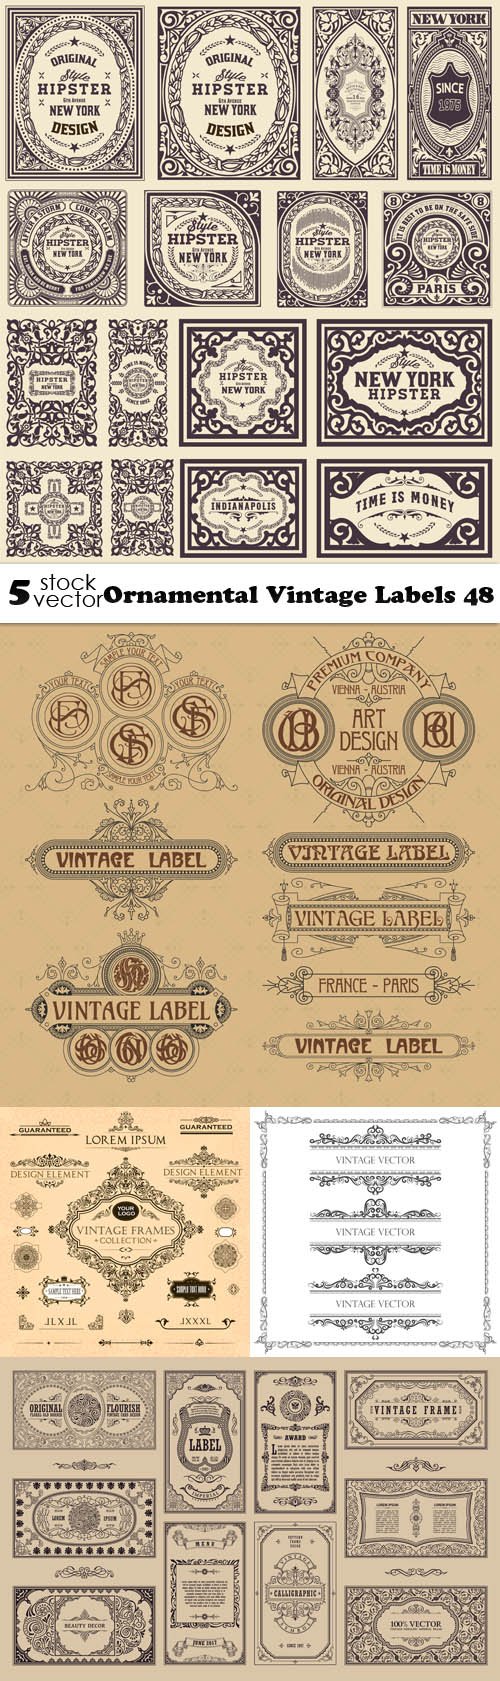 Vectors - Ornamental Vintage Labels 48